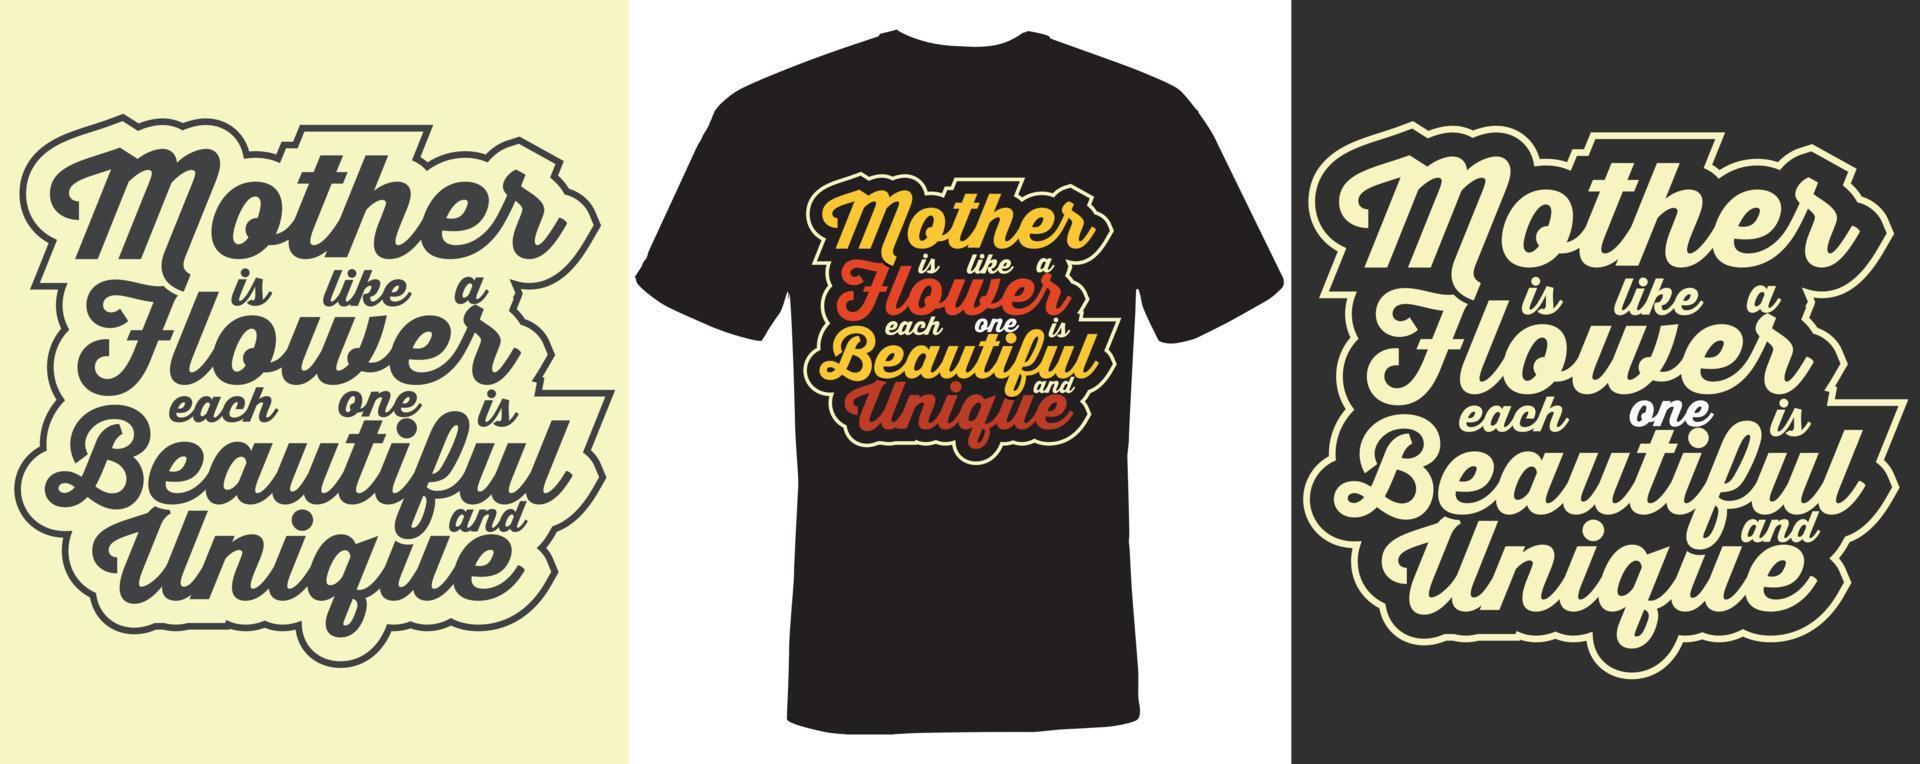 la mère est comme une fleur chacune est belle et unique conception de t-shirt pour la mère vecteur